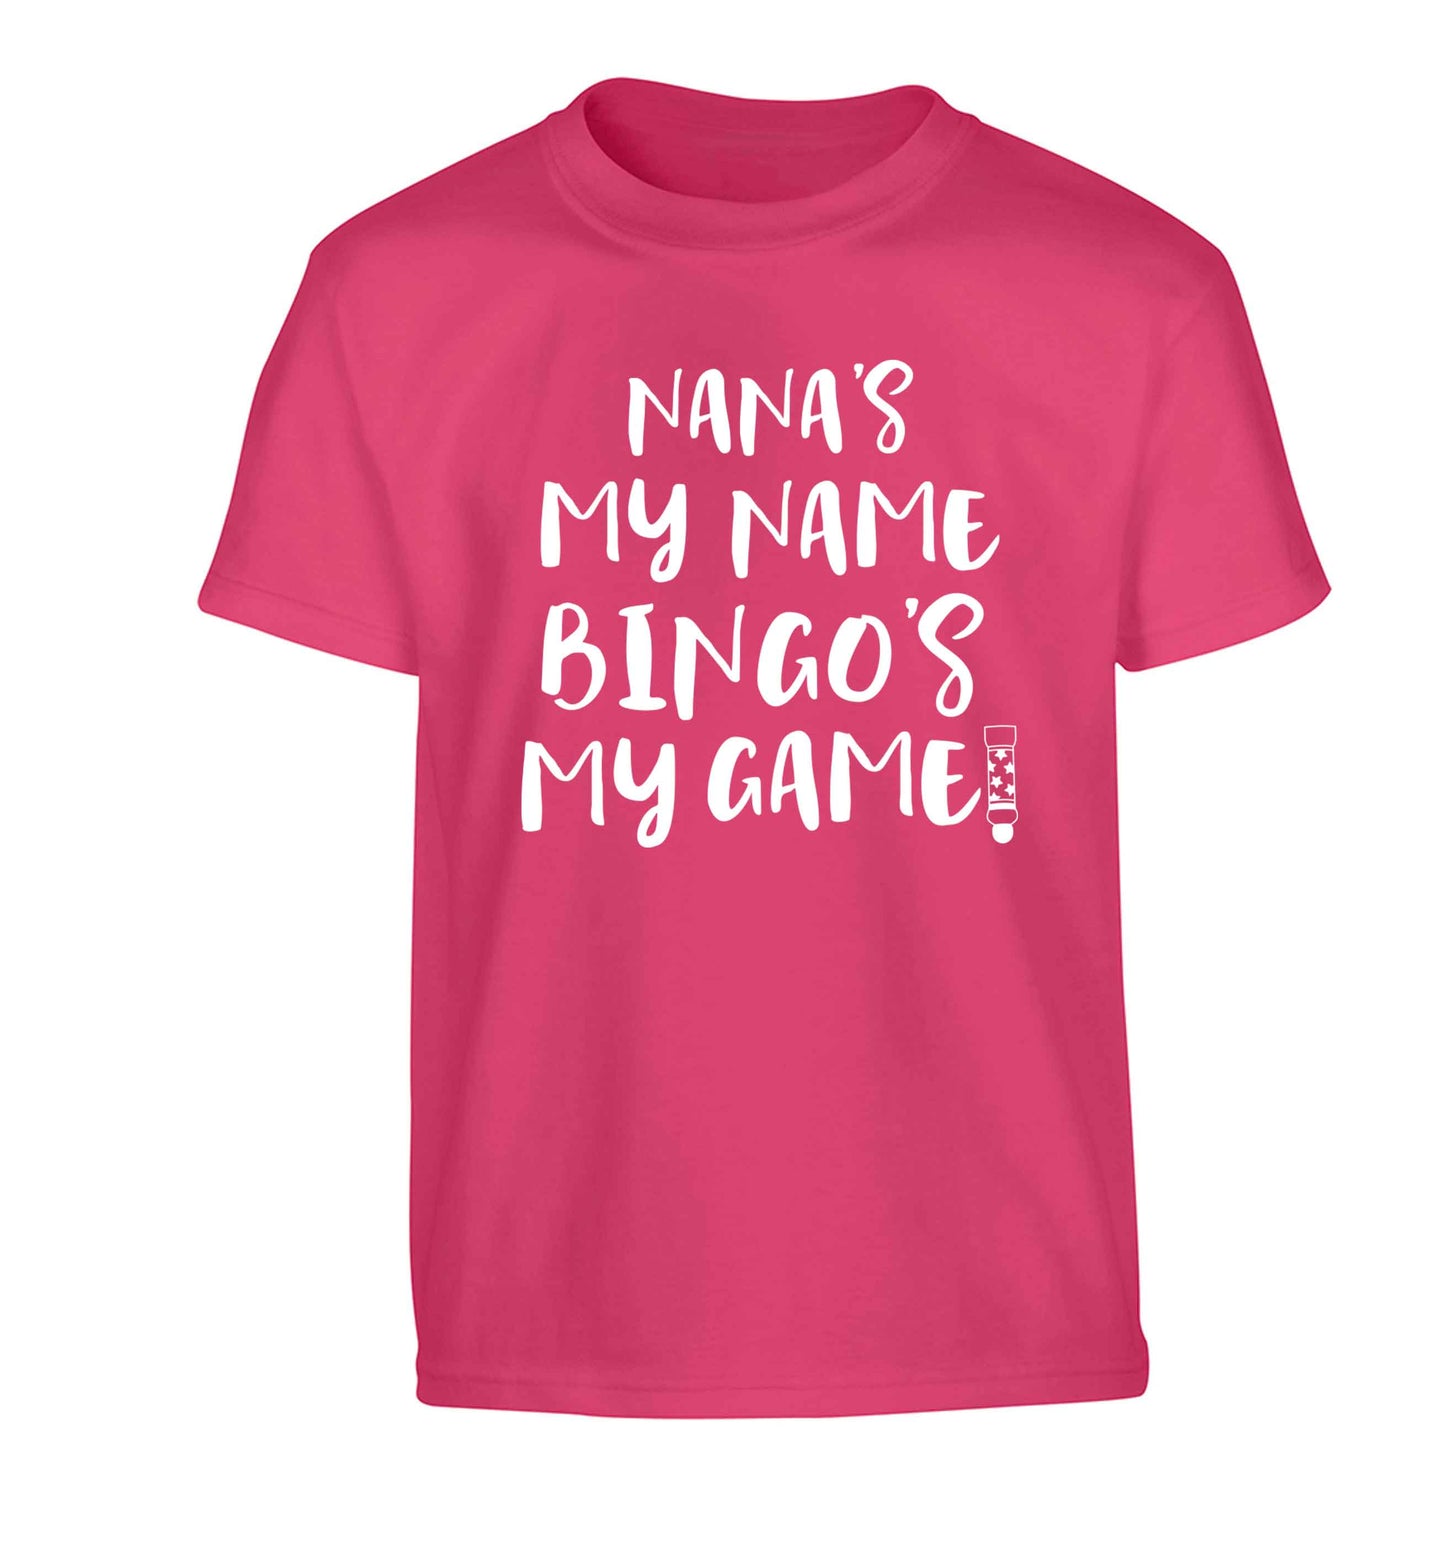 Nana's my name bingo's my game! Children's pink Tshirt 12-13 Years